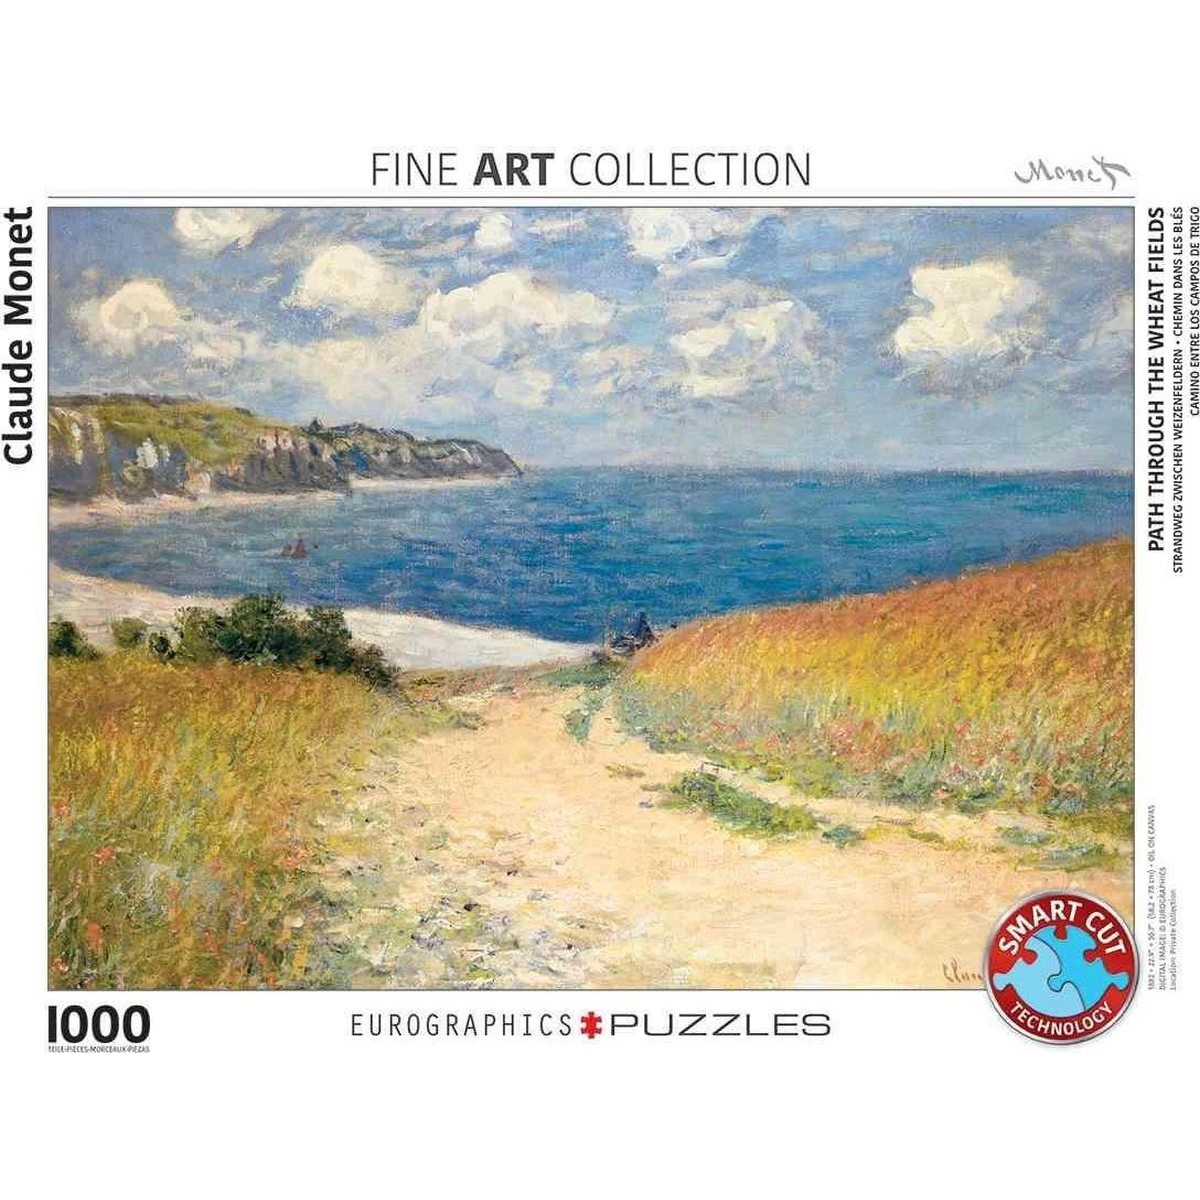 Weizenfelder durch - Pfad EUROGRAPHICS die Claude Puzzle (1000) Monet